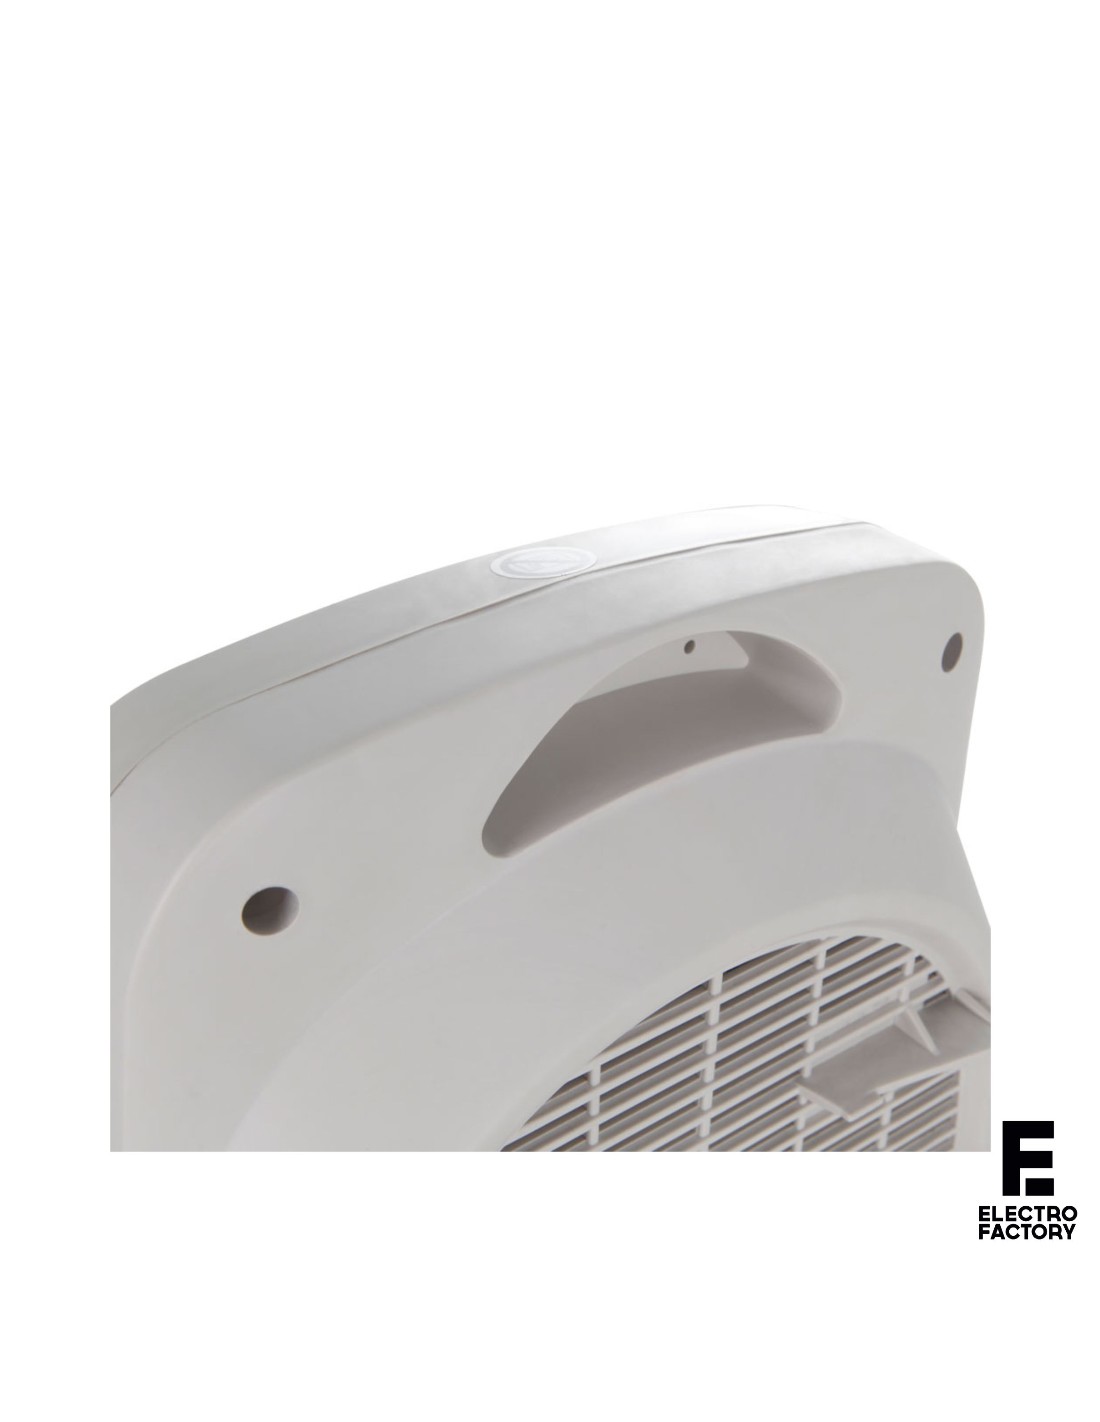 Calefactor baño Orbegozo FH7001, 2000W, 2 niveles, movimiento oscilante y  ventilador – Shopavia